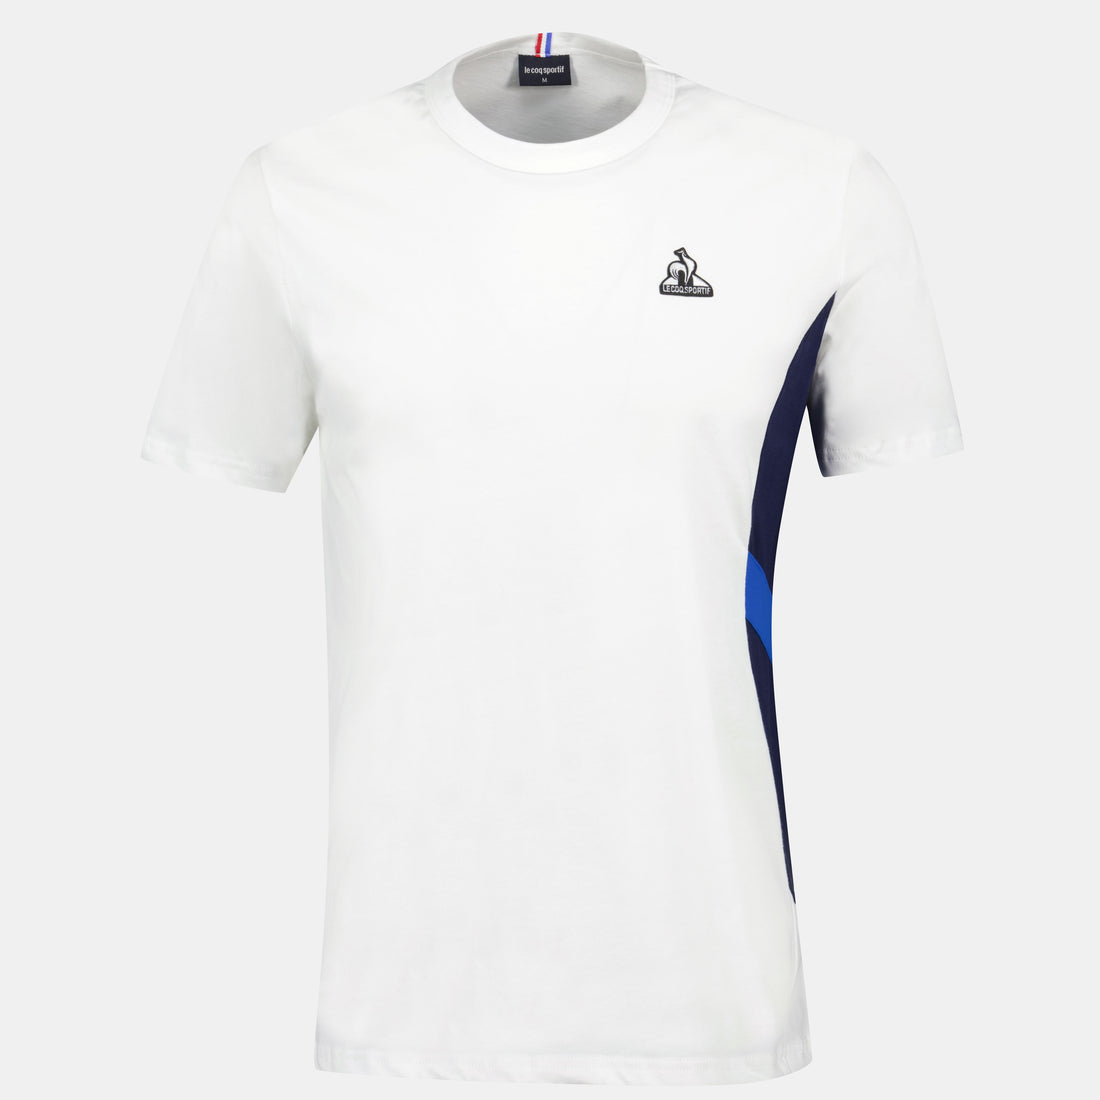 2410212-SAISON 1 Tee SS N°1 M new optical white  | Camiseta Hombre